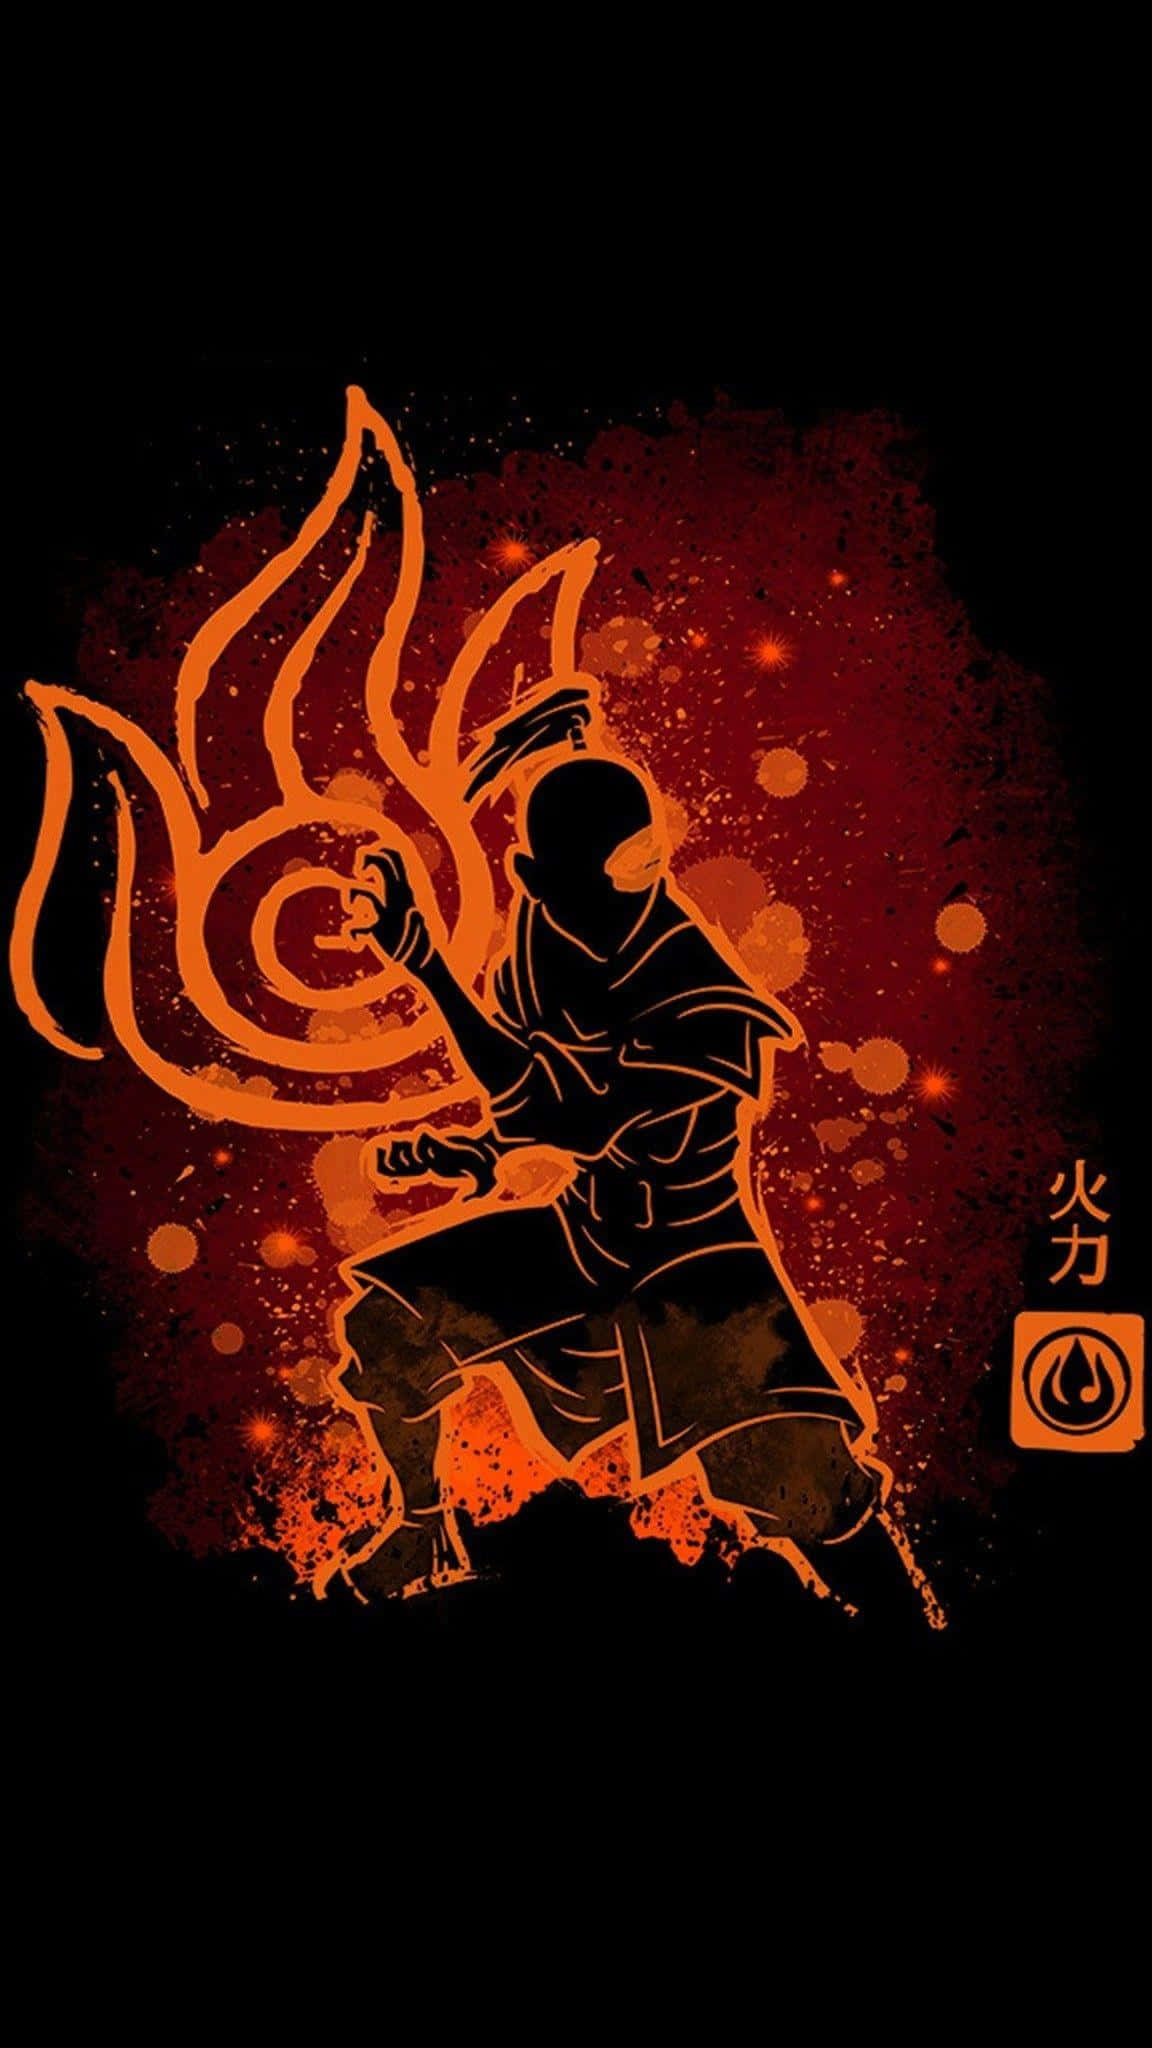 Avatar Aang the last airbender HD phone wallpaper  Peakpx